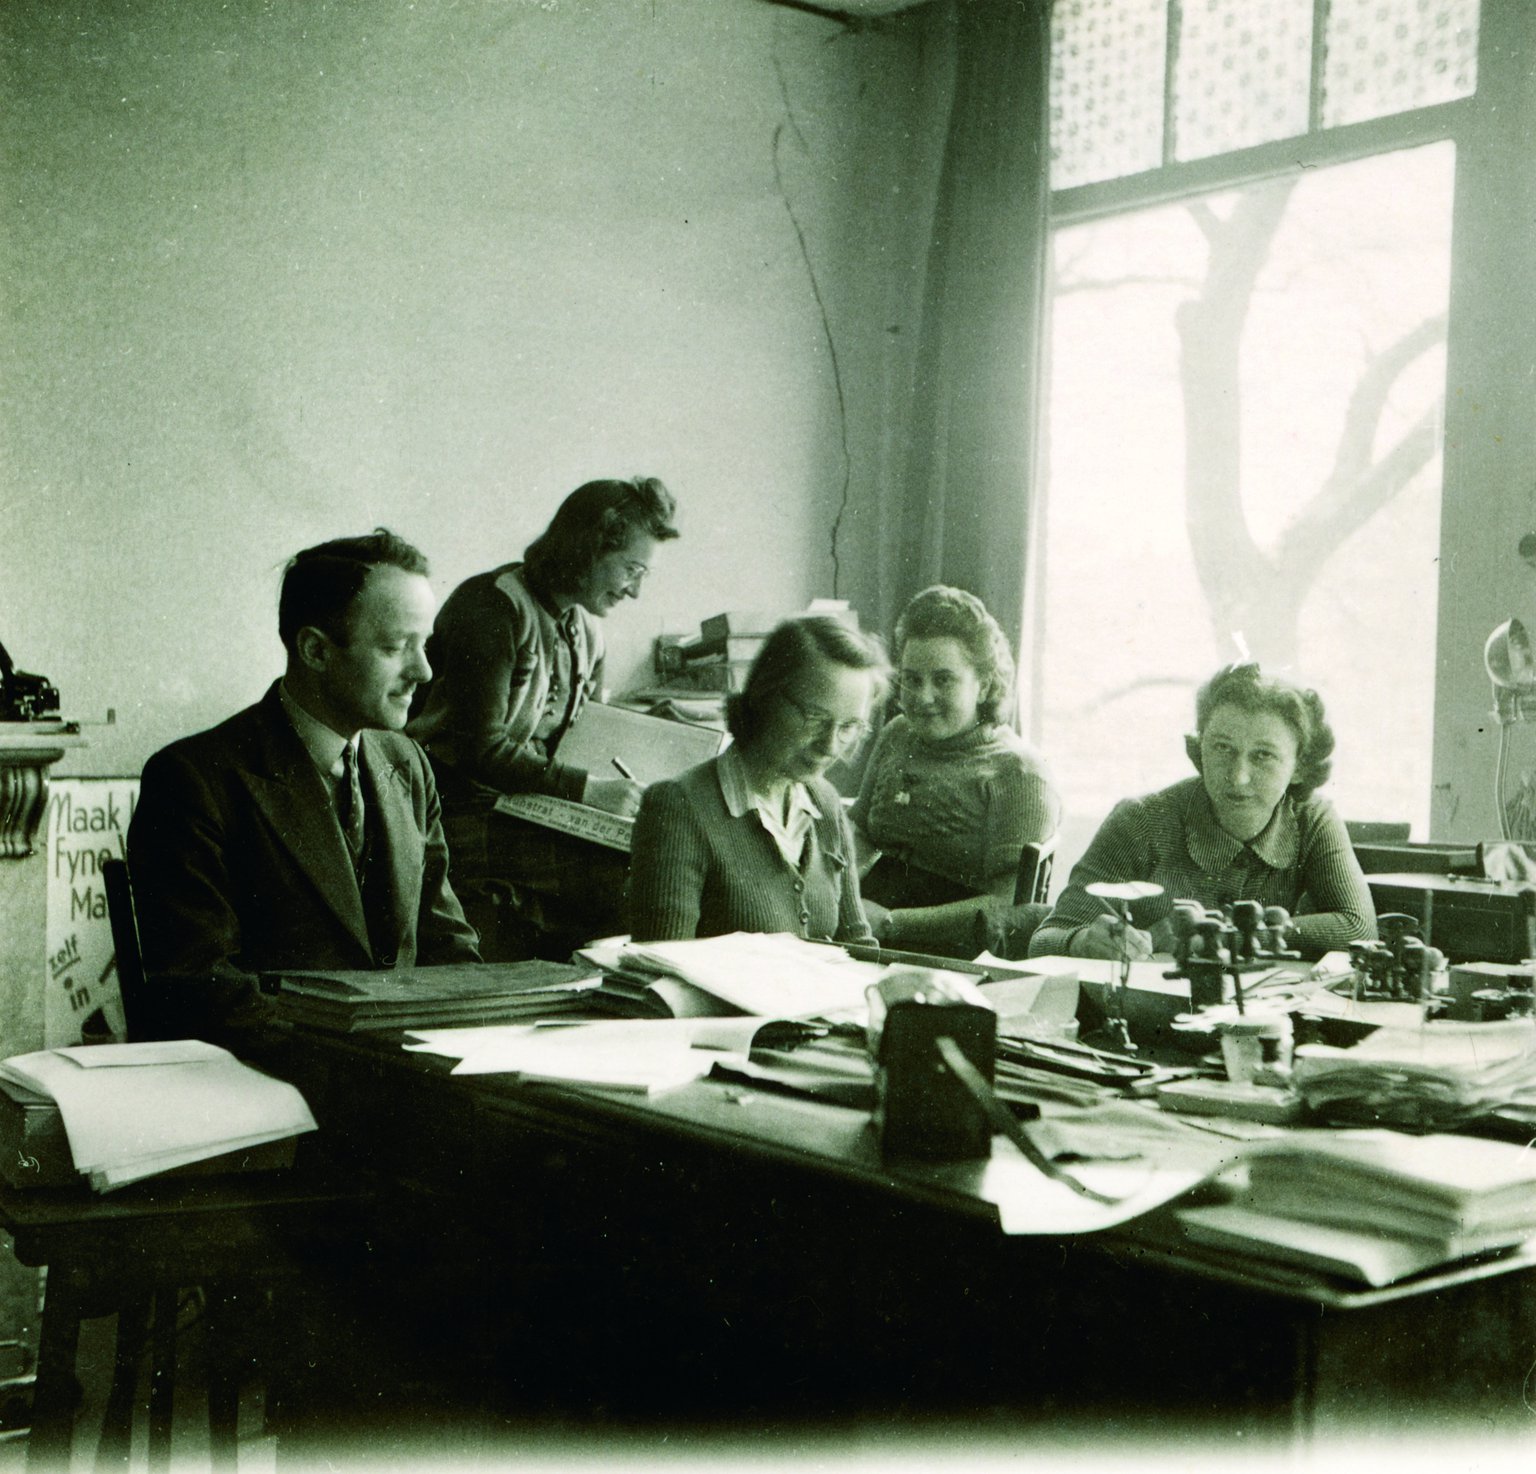 Een deel van het personeel van Otto Frank in 1941. Van links naar rechts: Victor Kugler, Esther, Bep Voskuijl, Pine Wuurman en Miep Gies. De achternaam van Esther is niet bekend. In 1942 zijn Esther en Pine niet meer in dienst van Opekta.